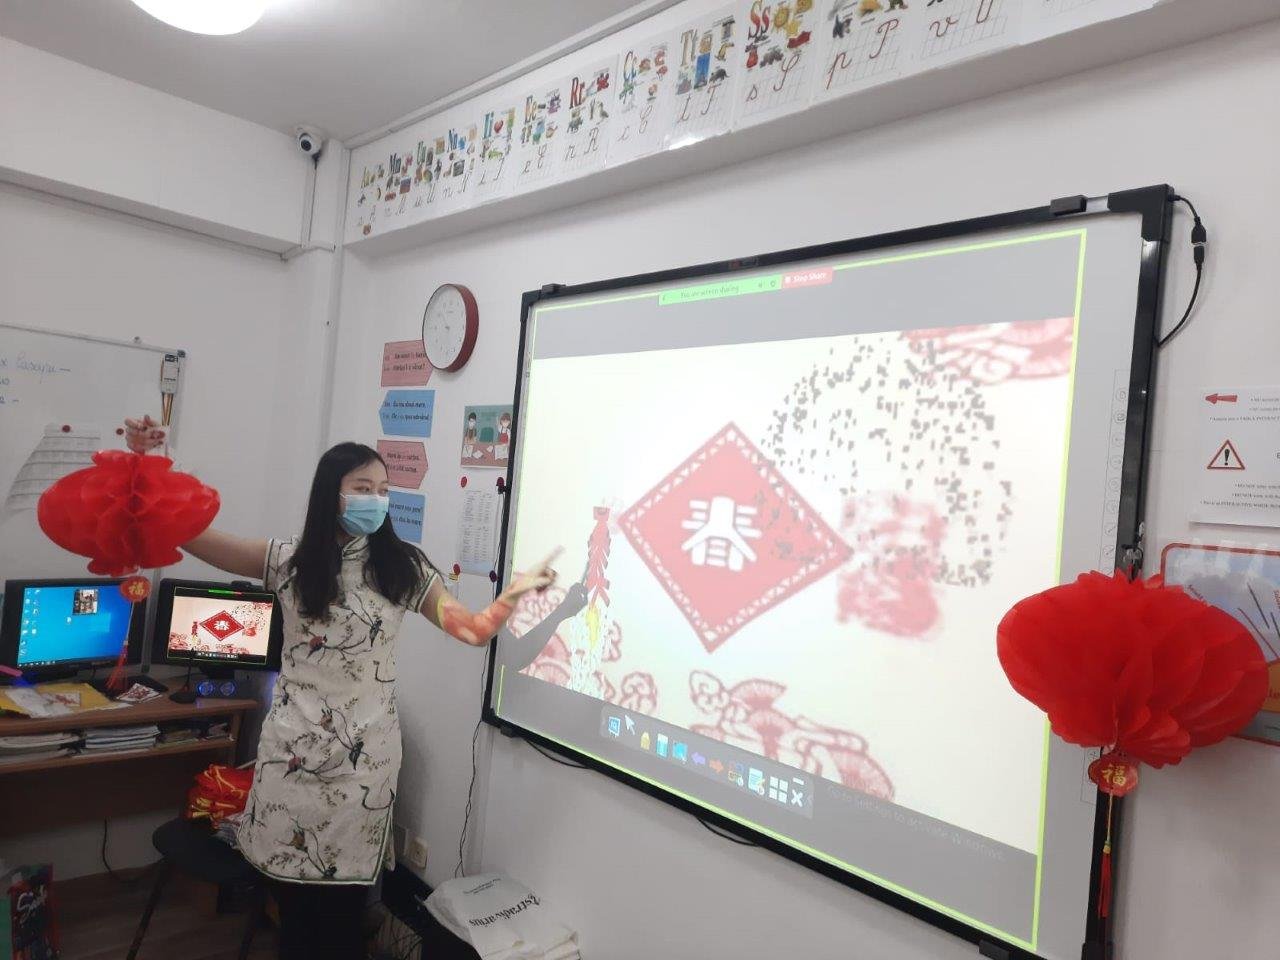  FOTO: Povestea profesoarei din China îndrăgostită de Iaşi